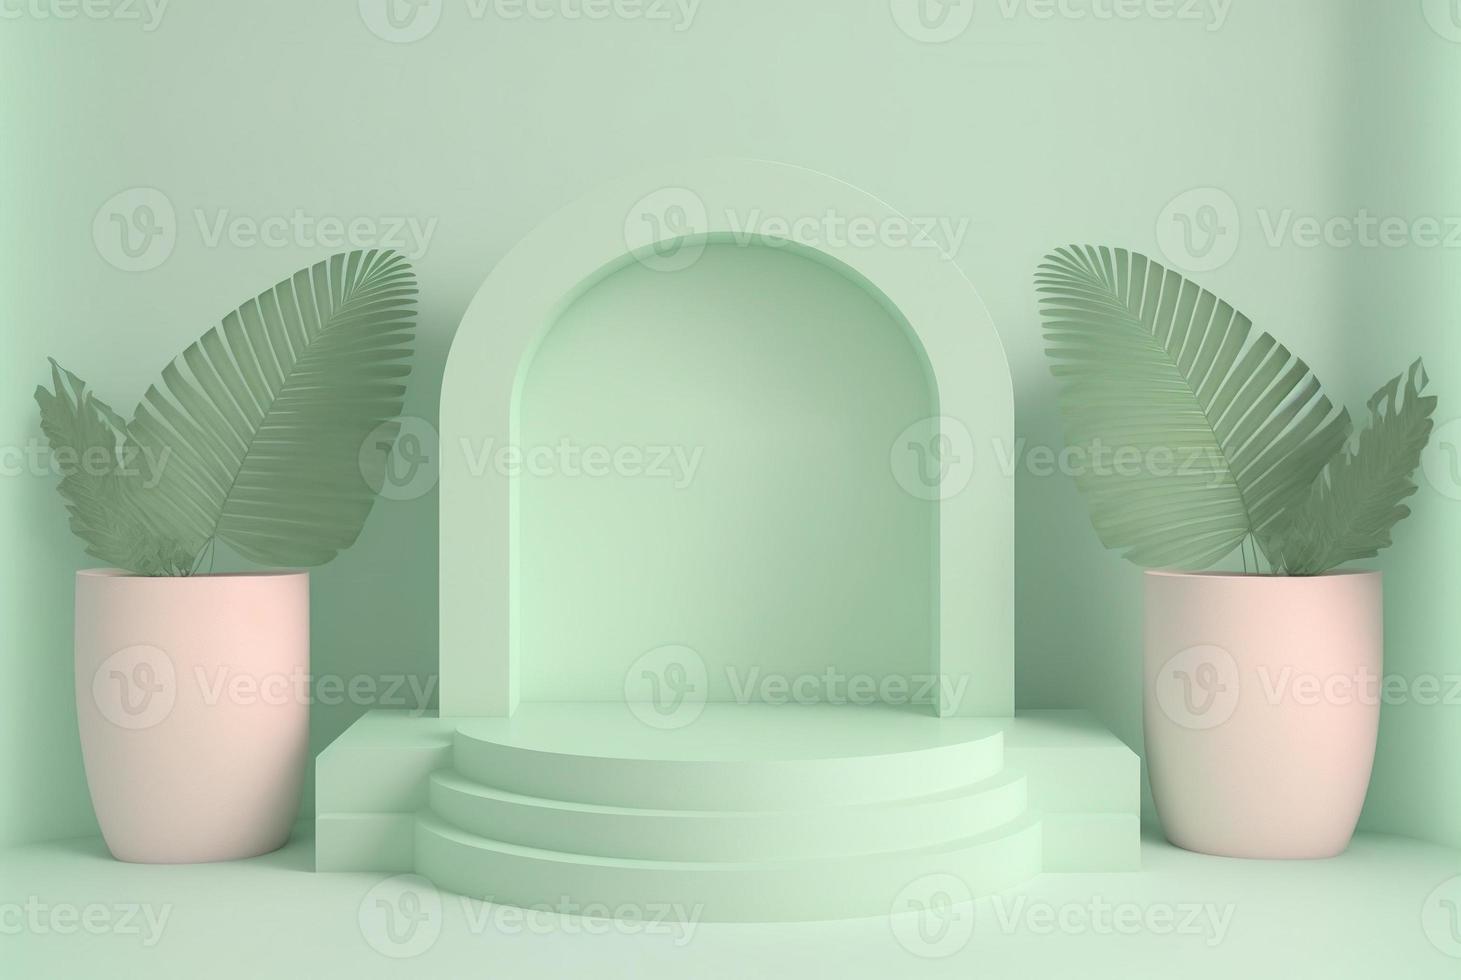 podio de hojas 3d sobre fondo verde suave para la escena y presentación del producto foto